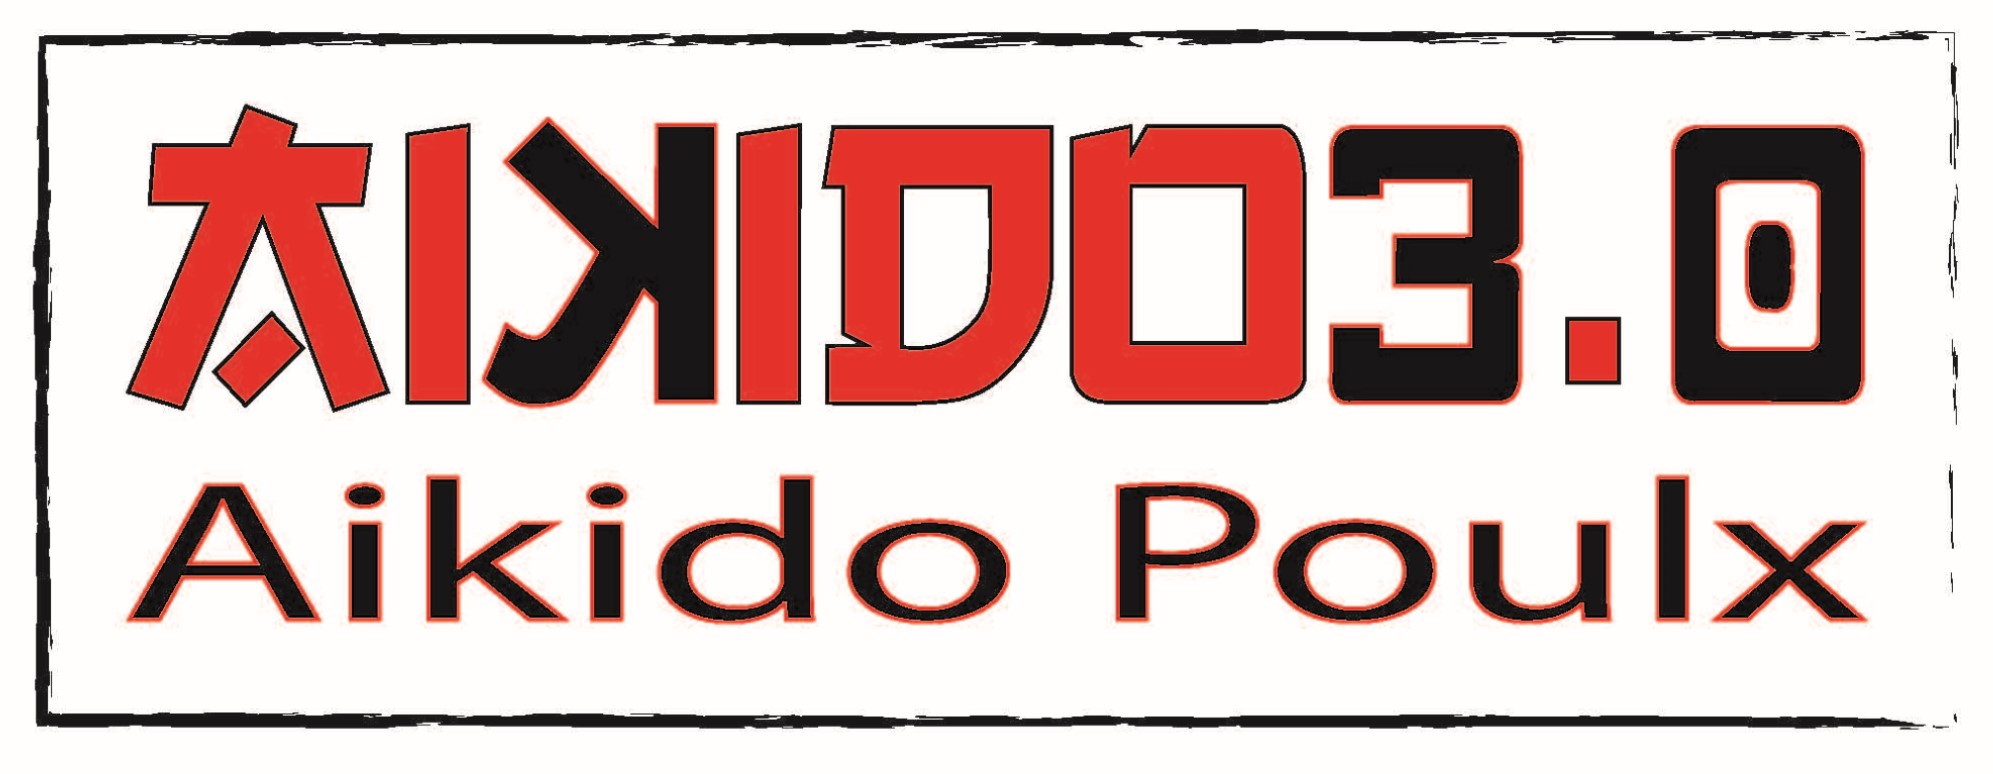 Logo AikidoPoulx new 2019_3